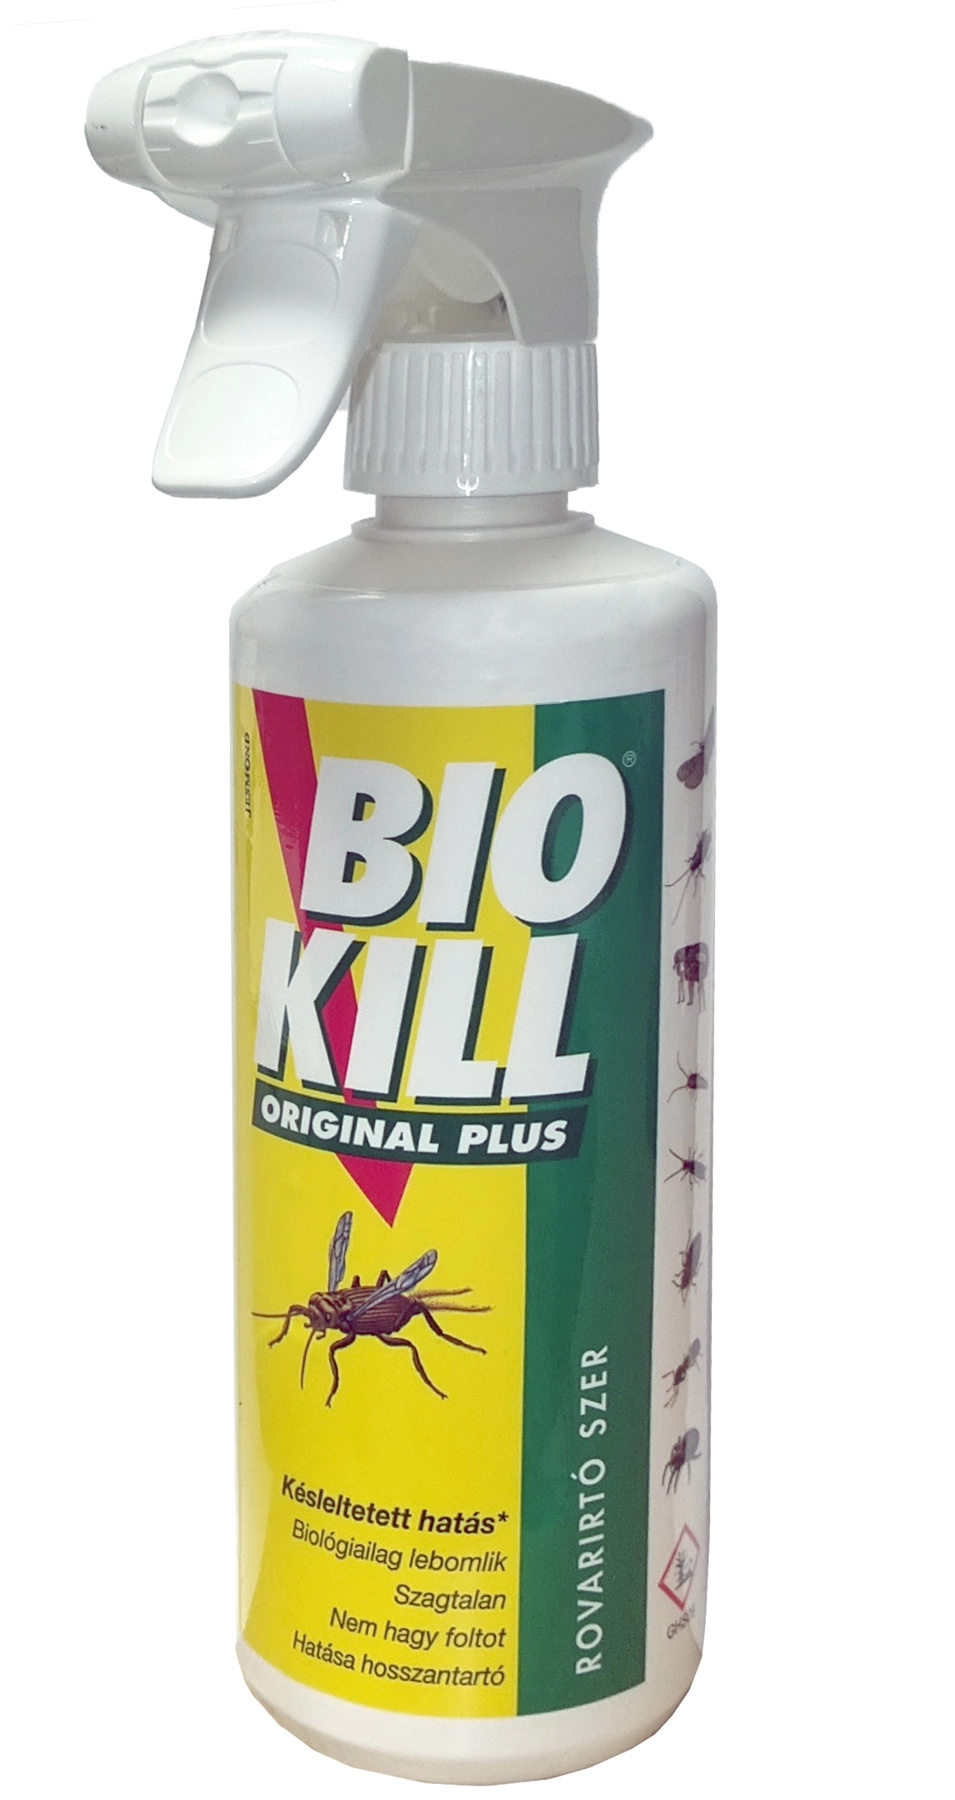 Bio Kill Original rovarirtó permet 0,5 literes szórófejes